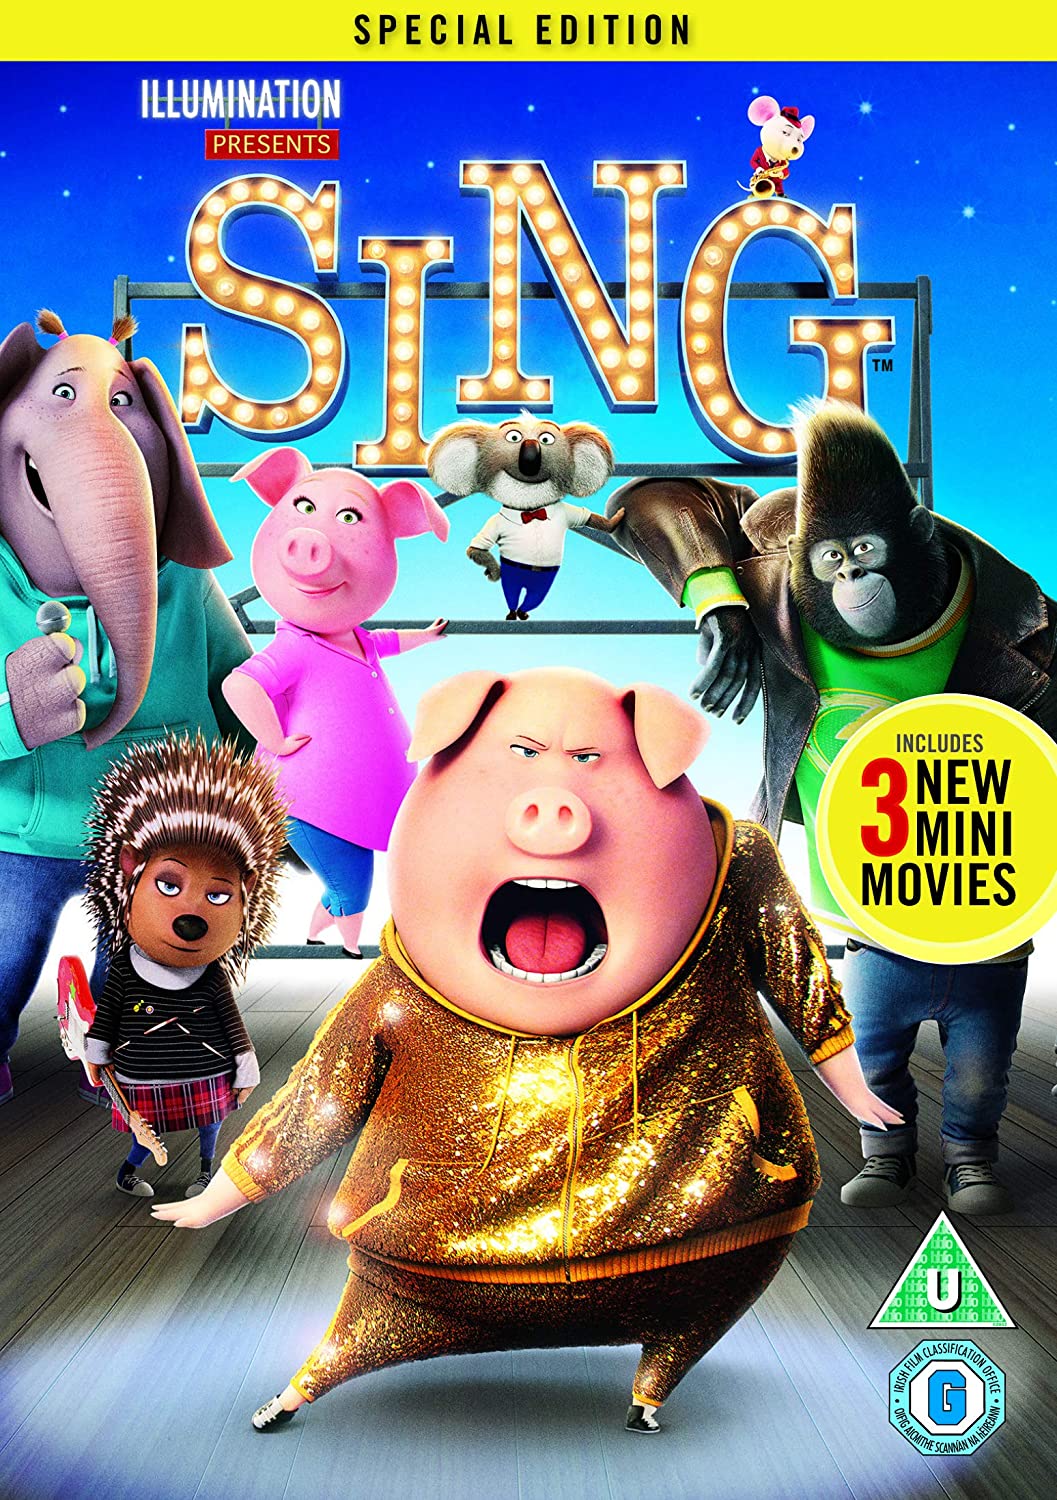 Sing [2017] (Illumination) (DVD)